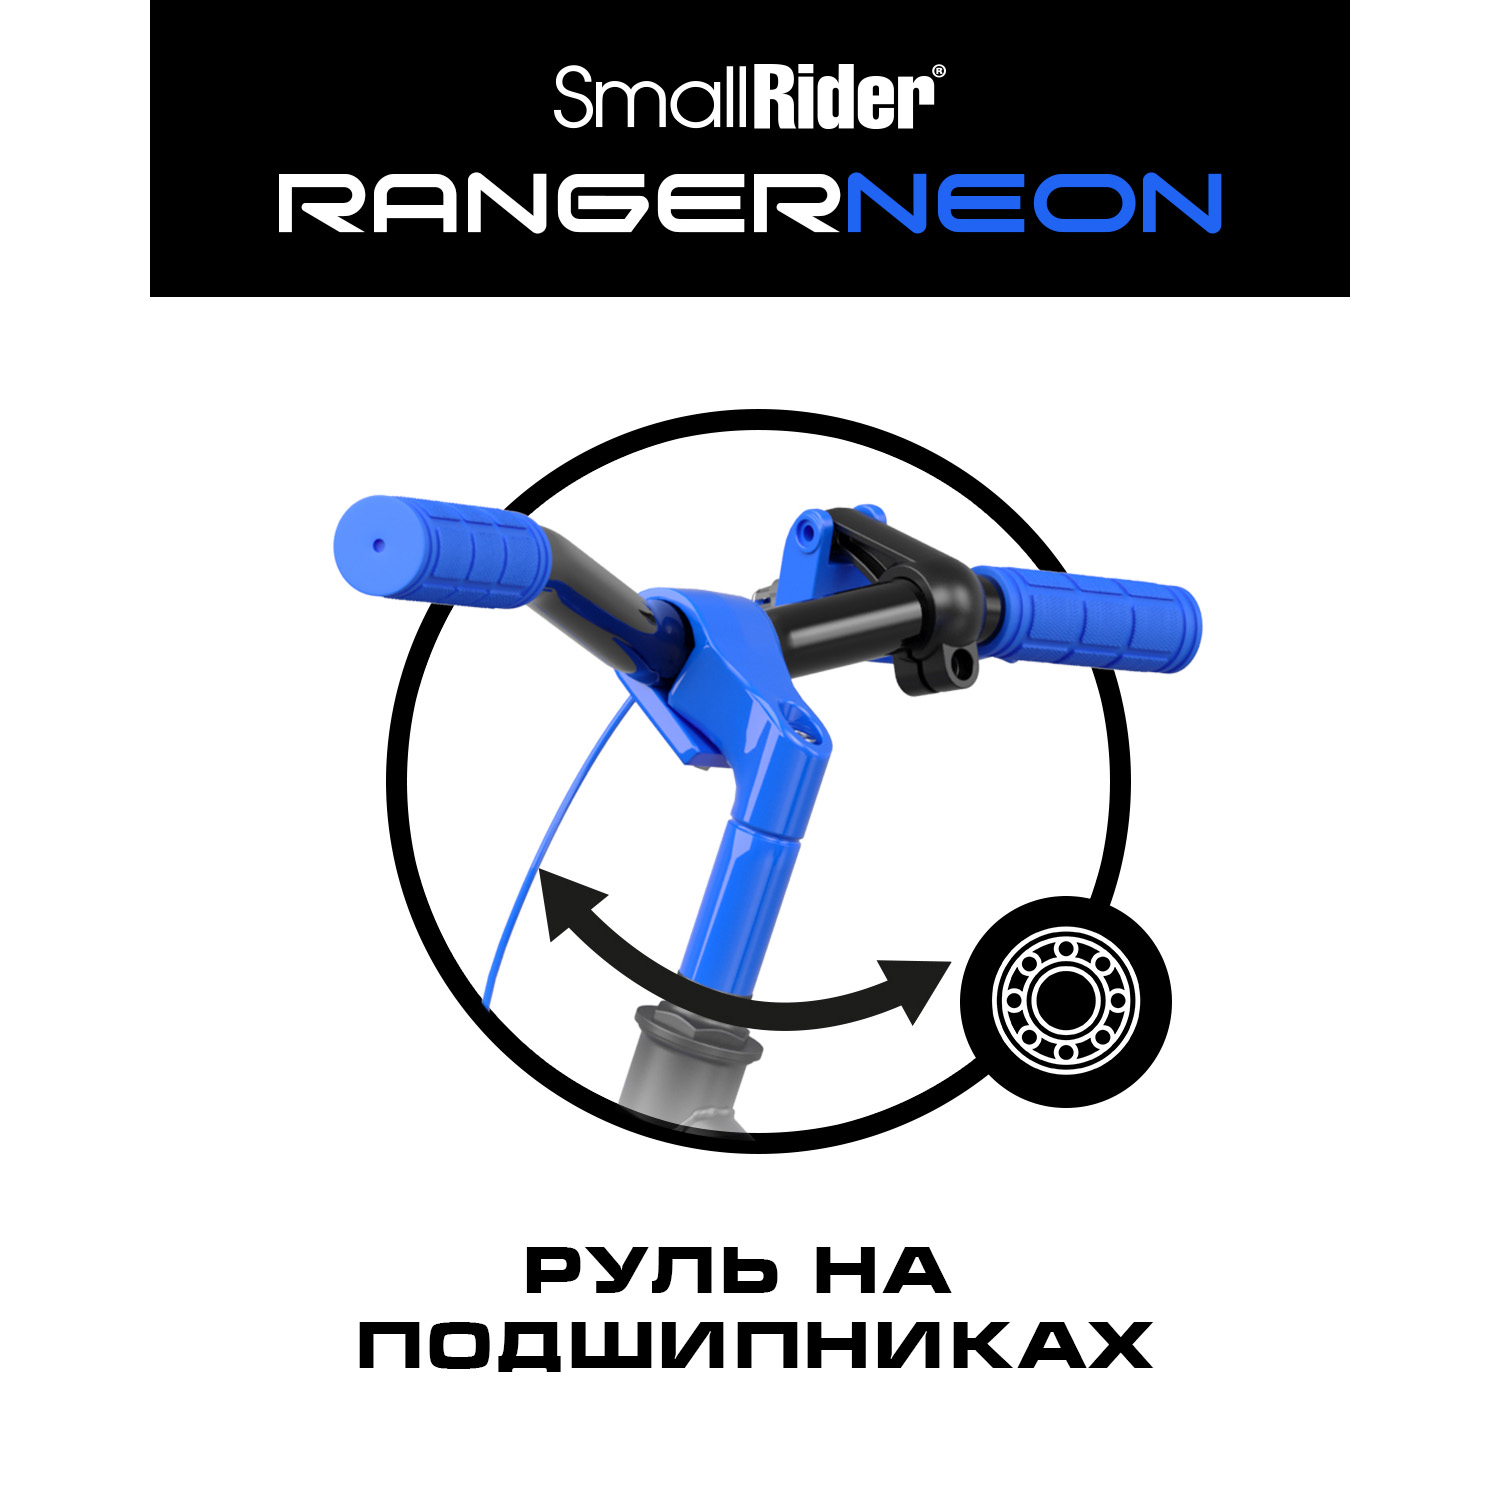 Беговел Small Rider Ranger 3 Neon R синий - фото 7